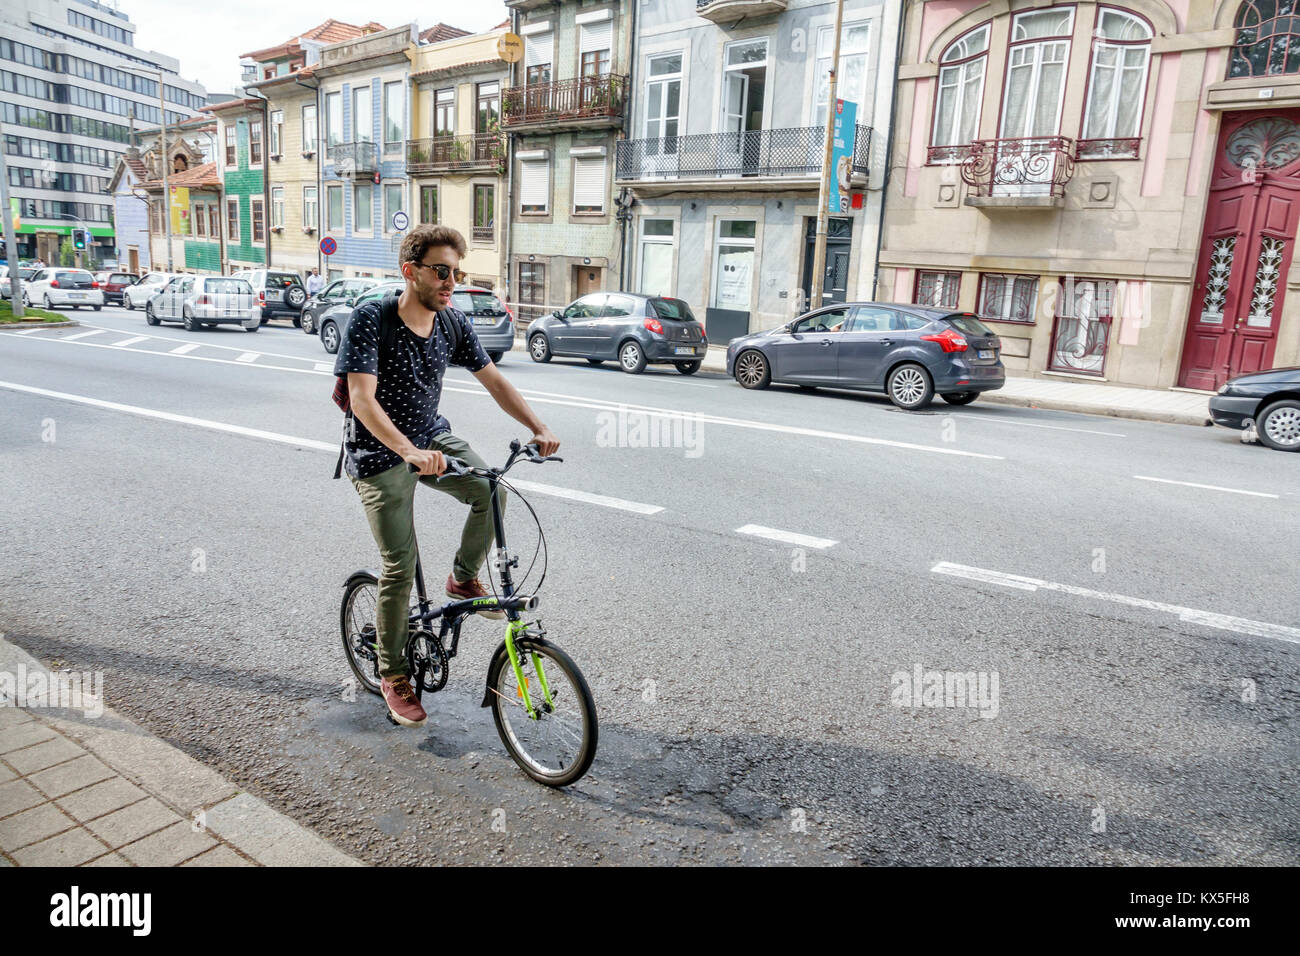 Porto Portugal, Rua de Dom Manuel, Straße, Hispanic, Immigranten, Männer, Männer, faltbar, Fahrrad Fahrräder Radfahren Reiten Fahrer Fahrrad Stockfoto